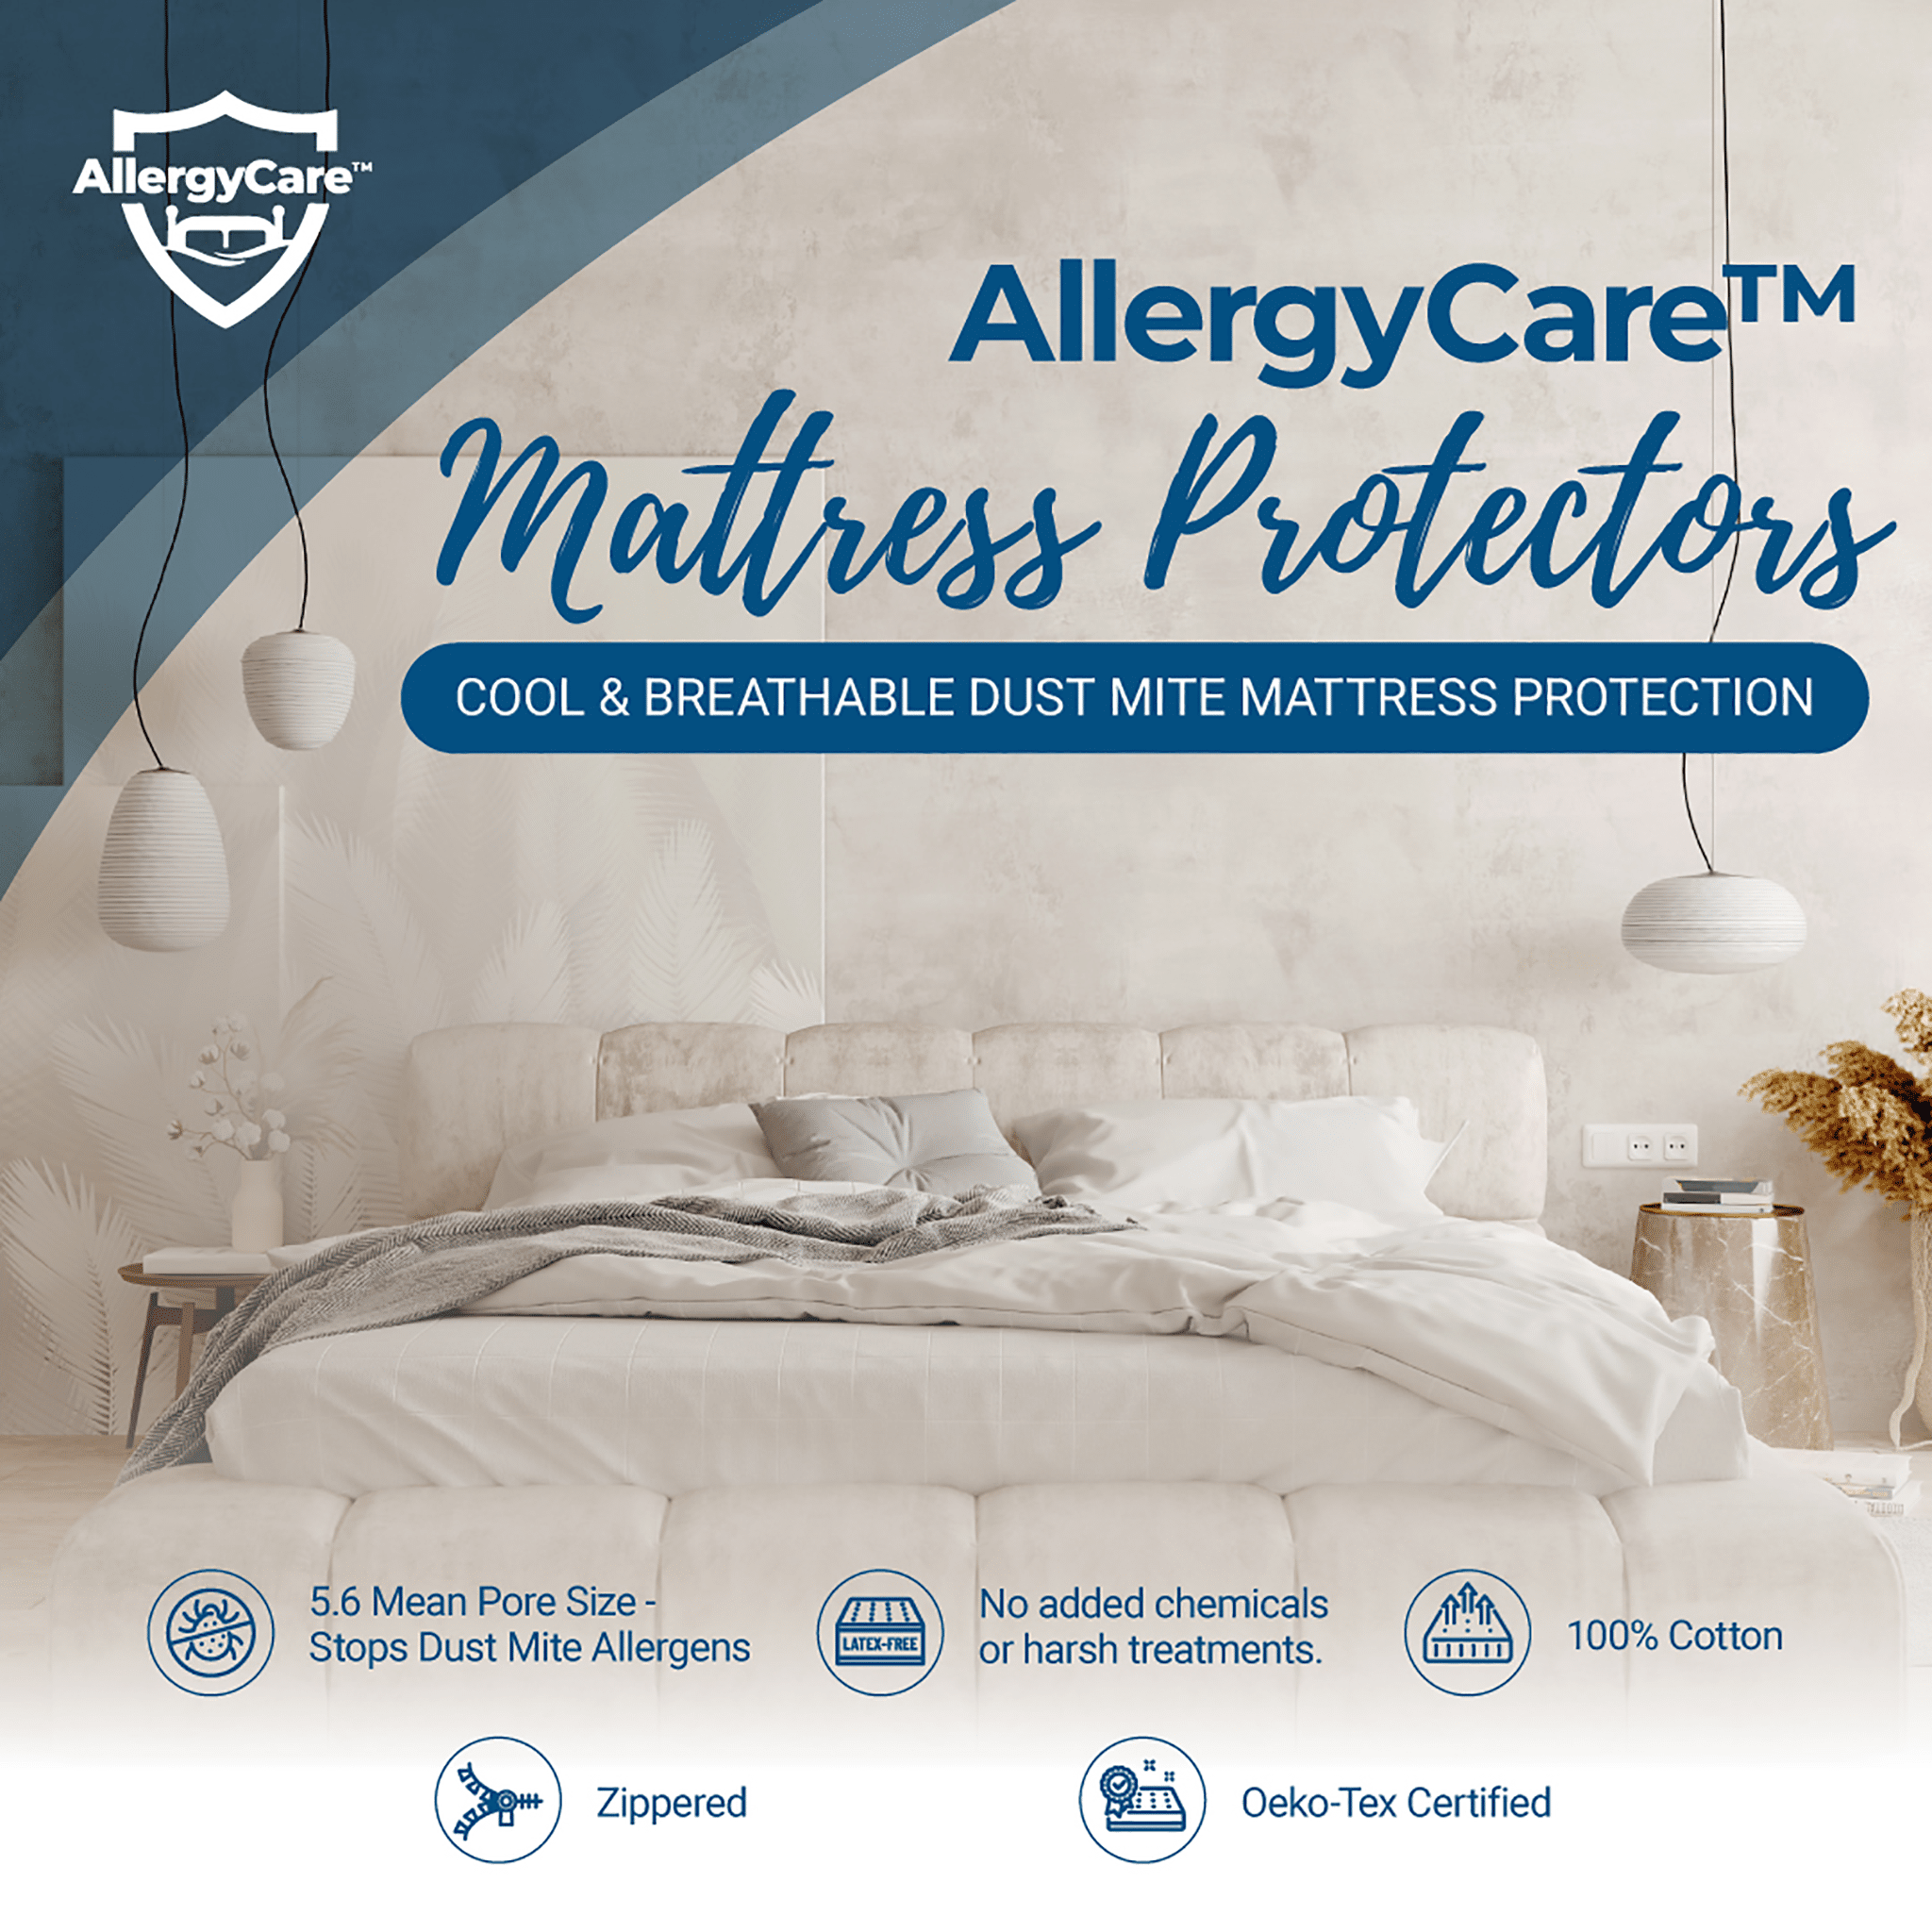 AlleregyCare Mattress Protectors - 100% cotton allergen barrier